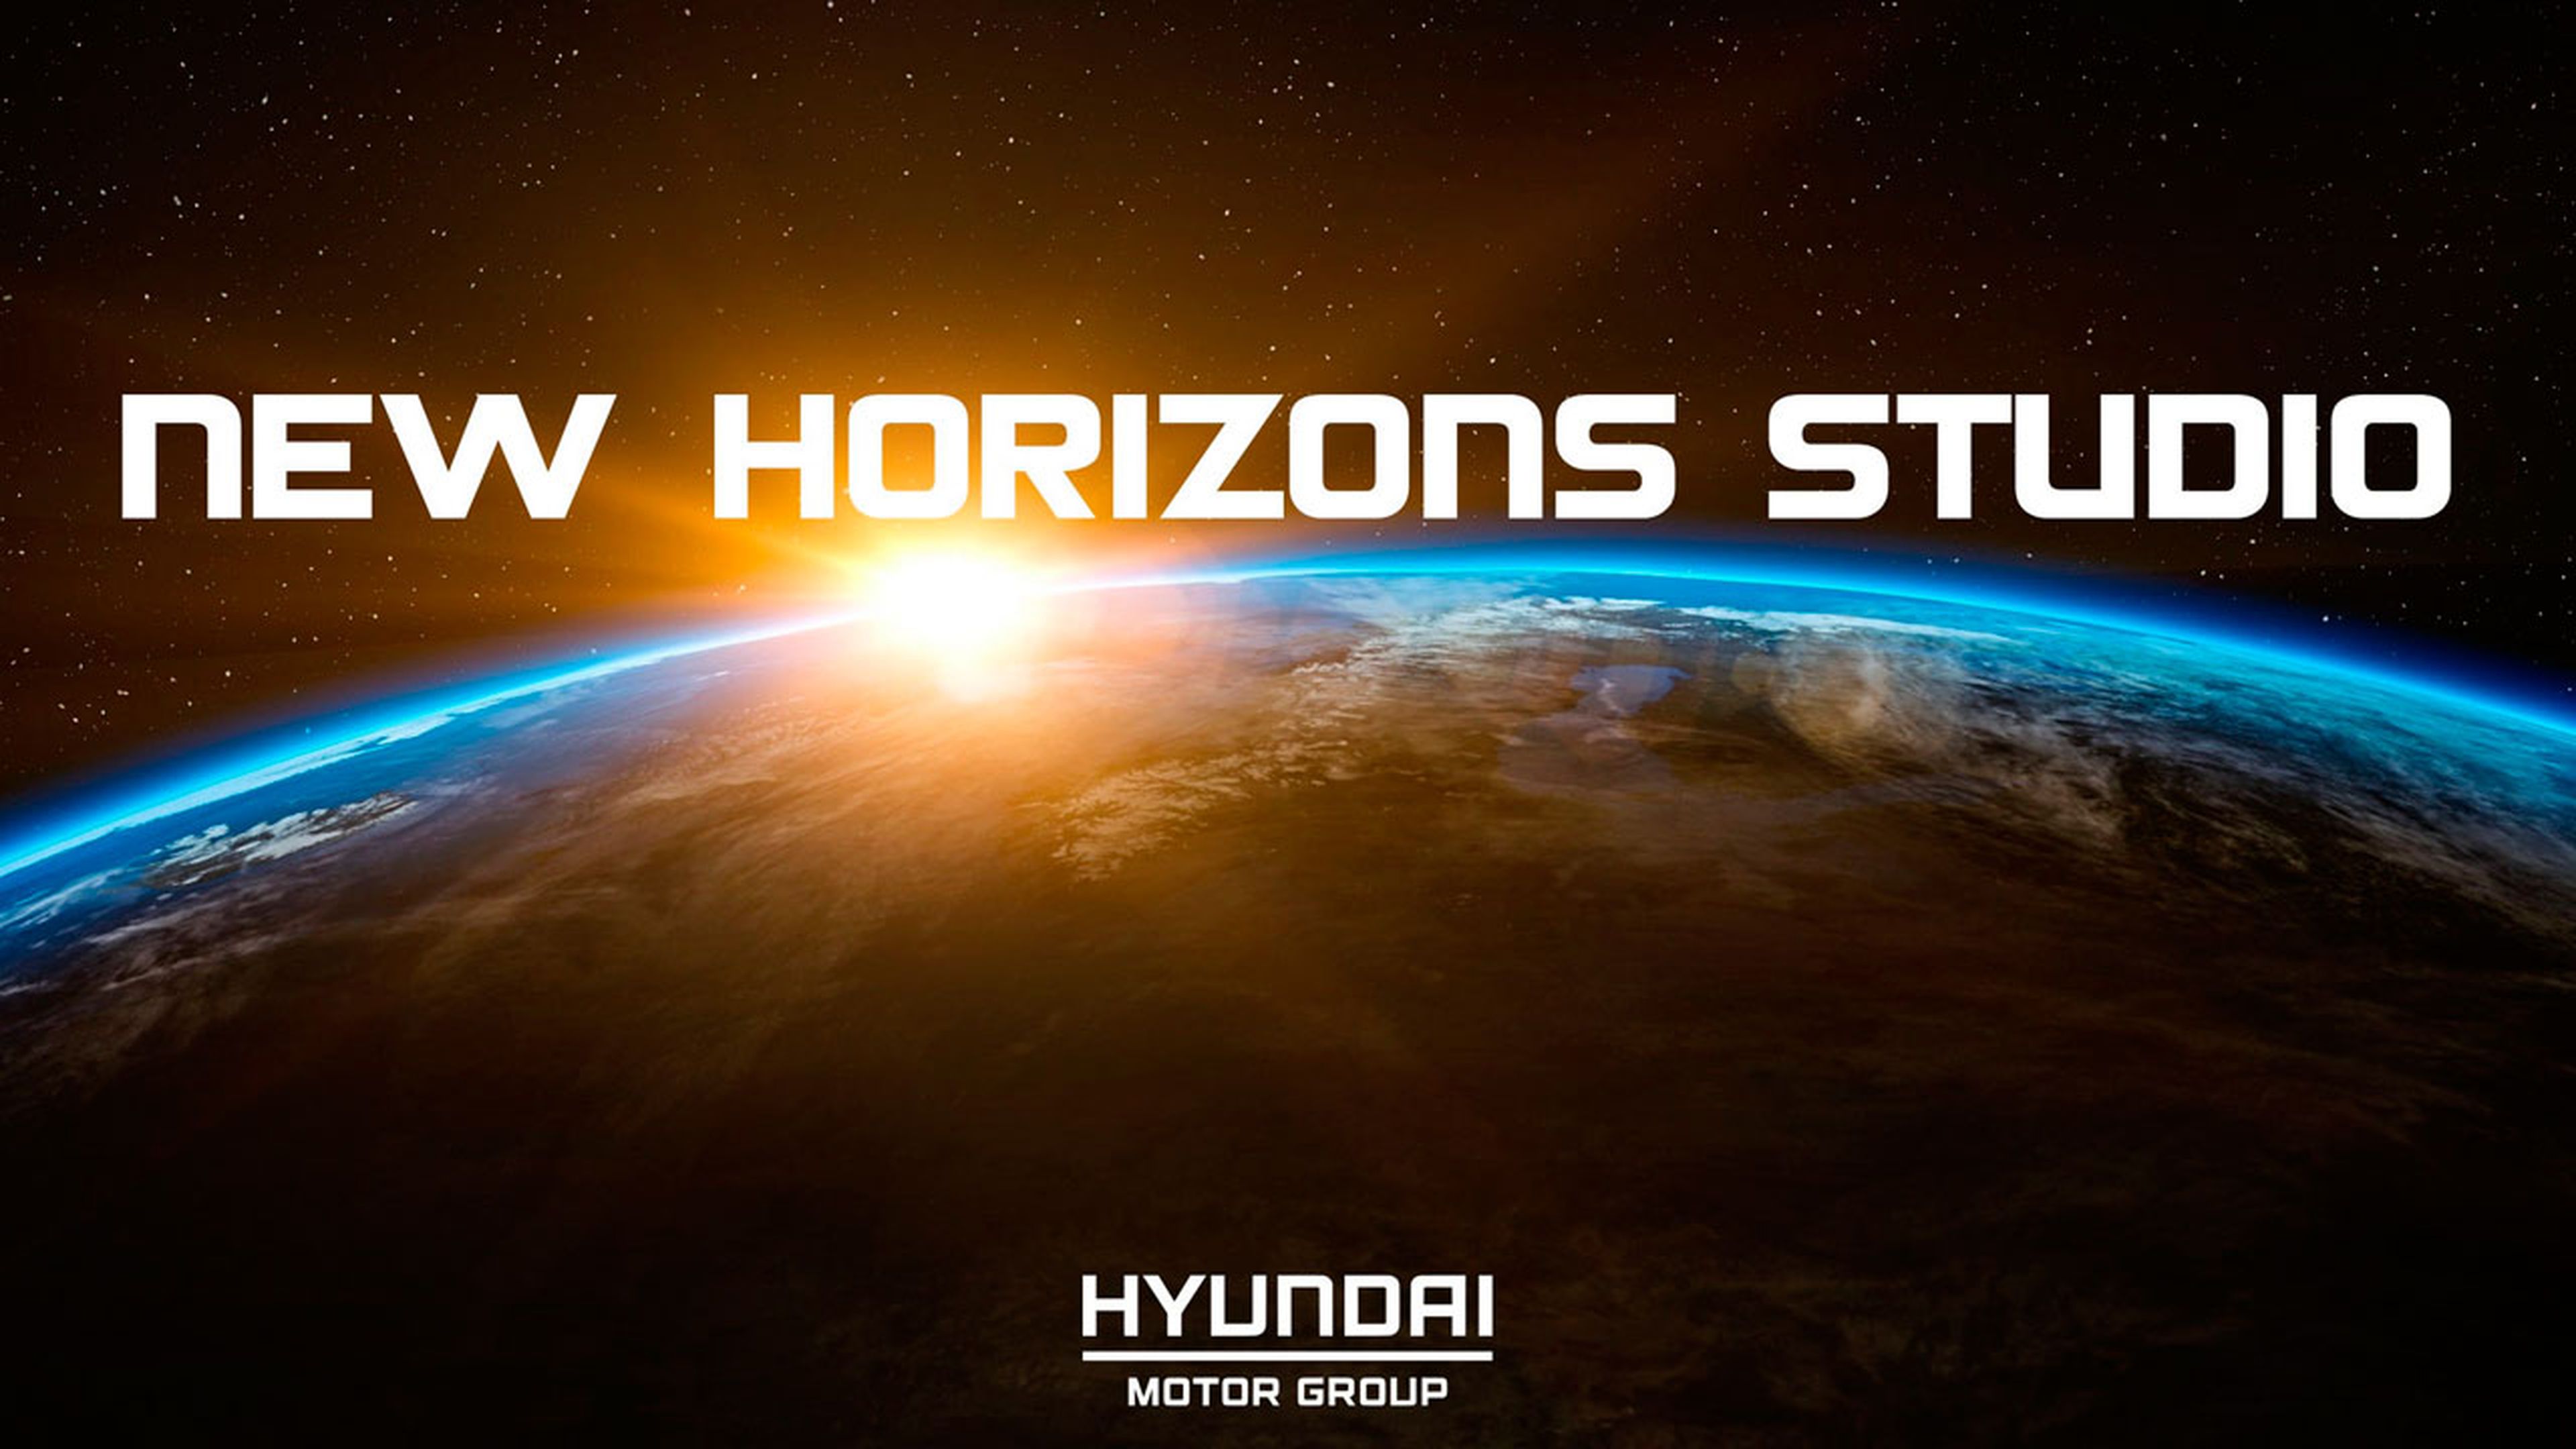 hyundai-new-horizons-studio_6